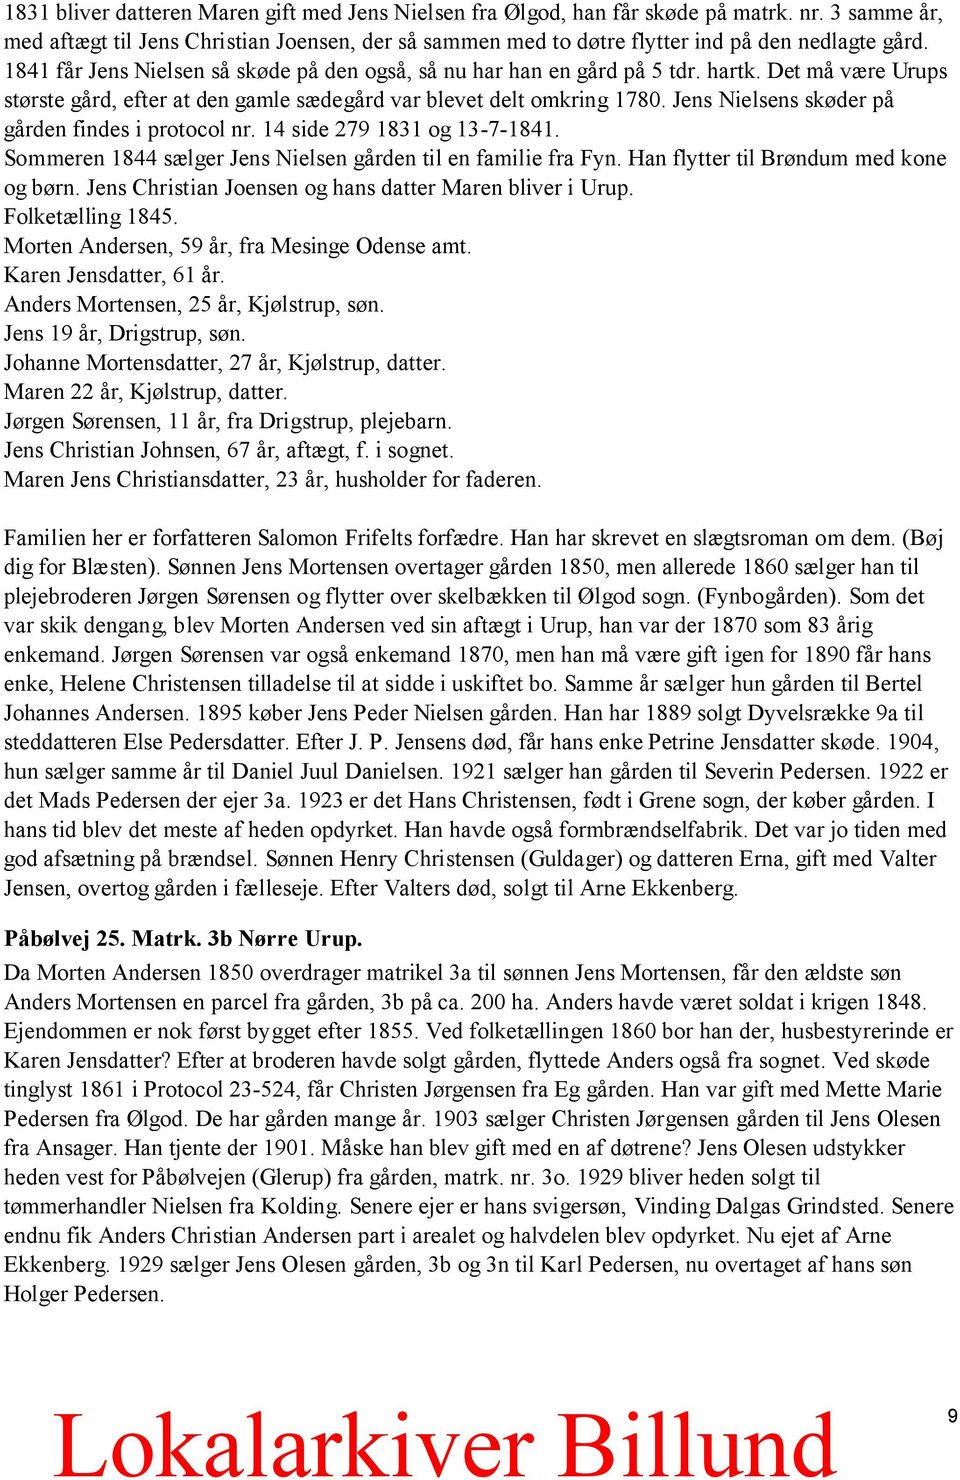 Jens Nielsens skøder på gården findes i protocol nr. 14 side 279 1831 og 13-7-1841. Sommeren 1844 sælger Jens Nielsen gården til en familie fra Fyn. Han flytter til Brøndum med kone og børn.